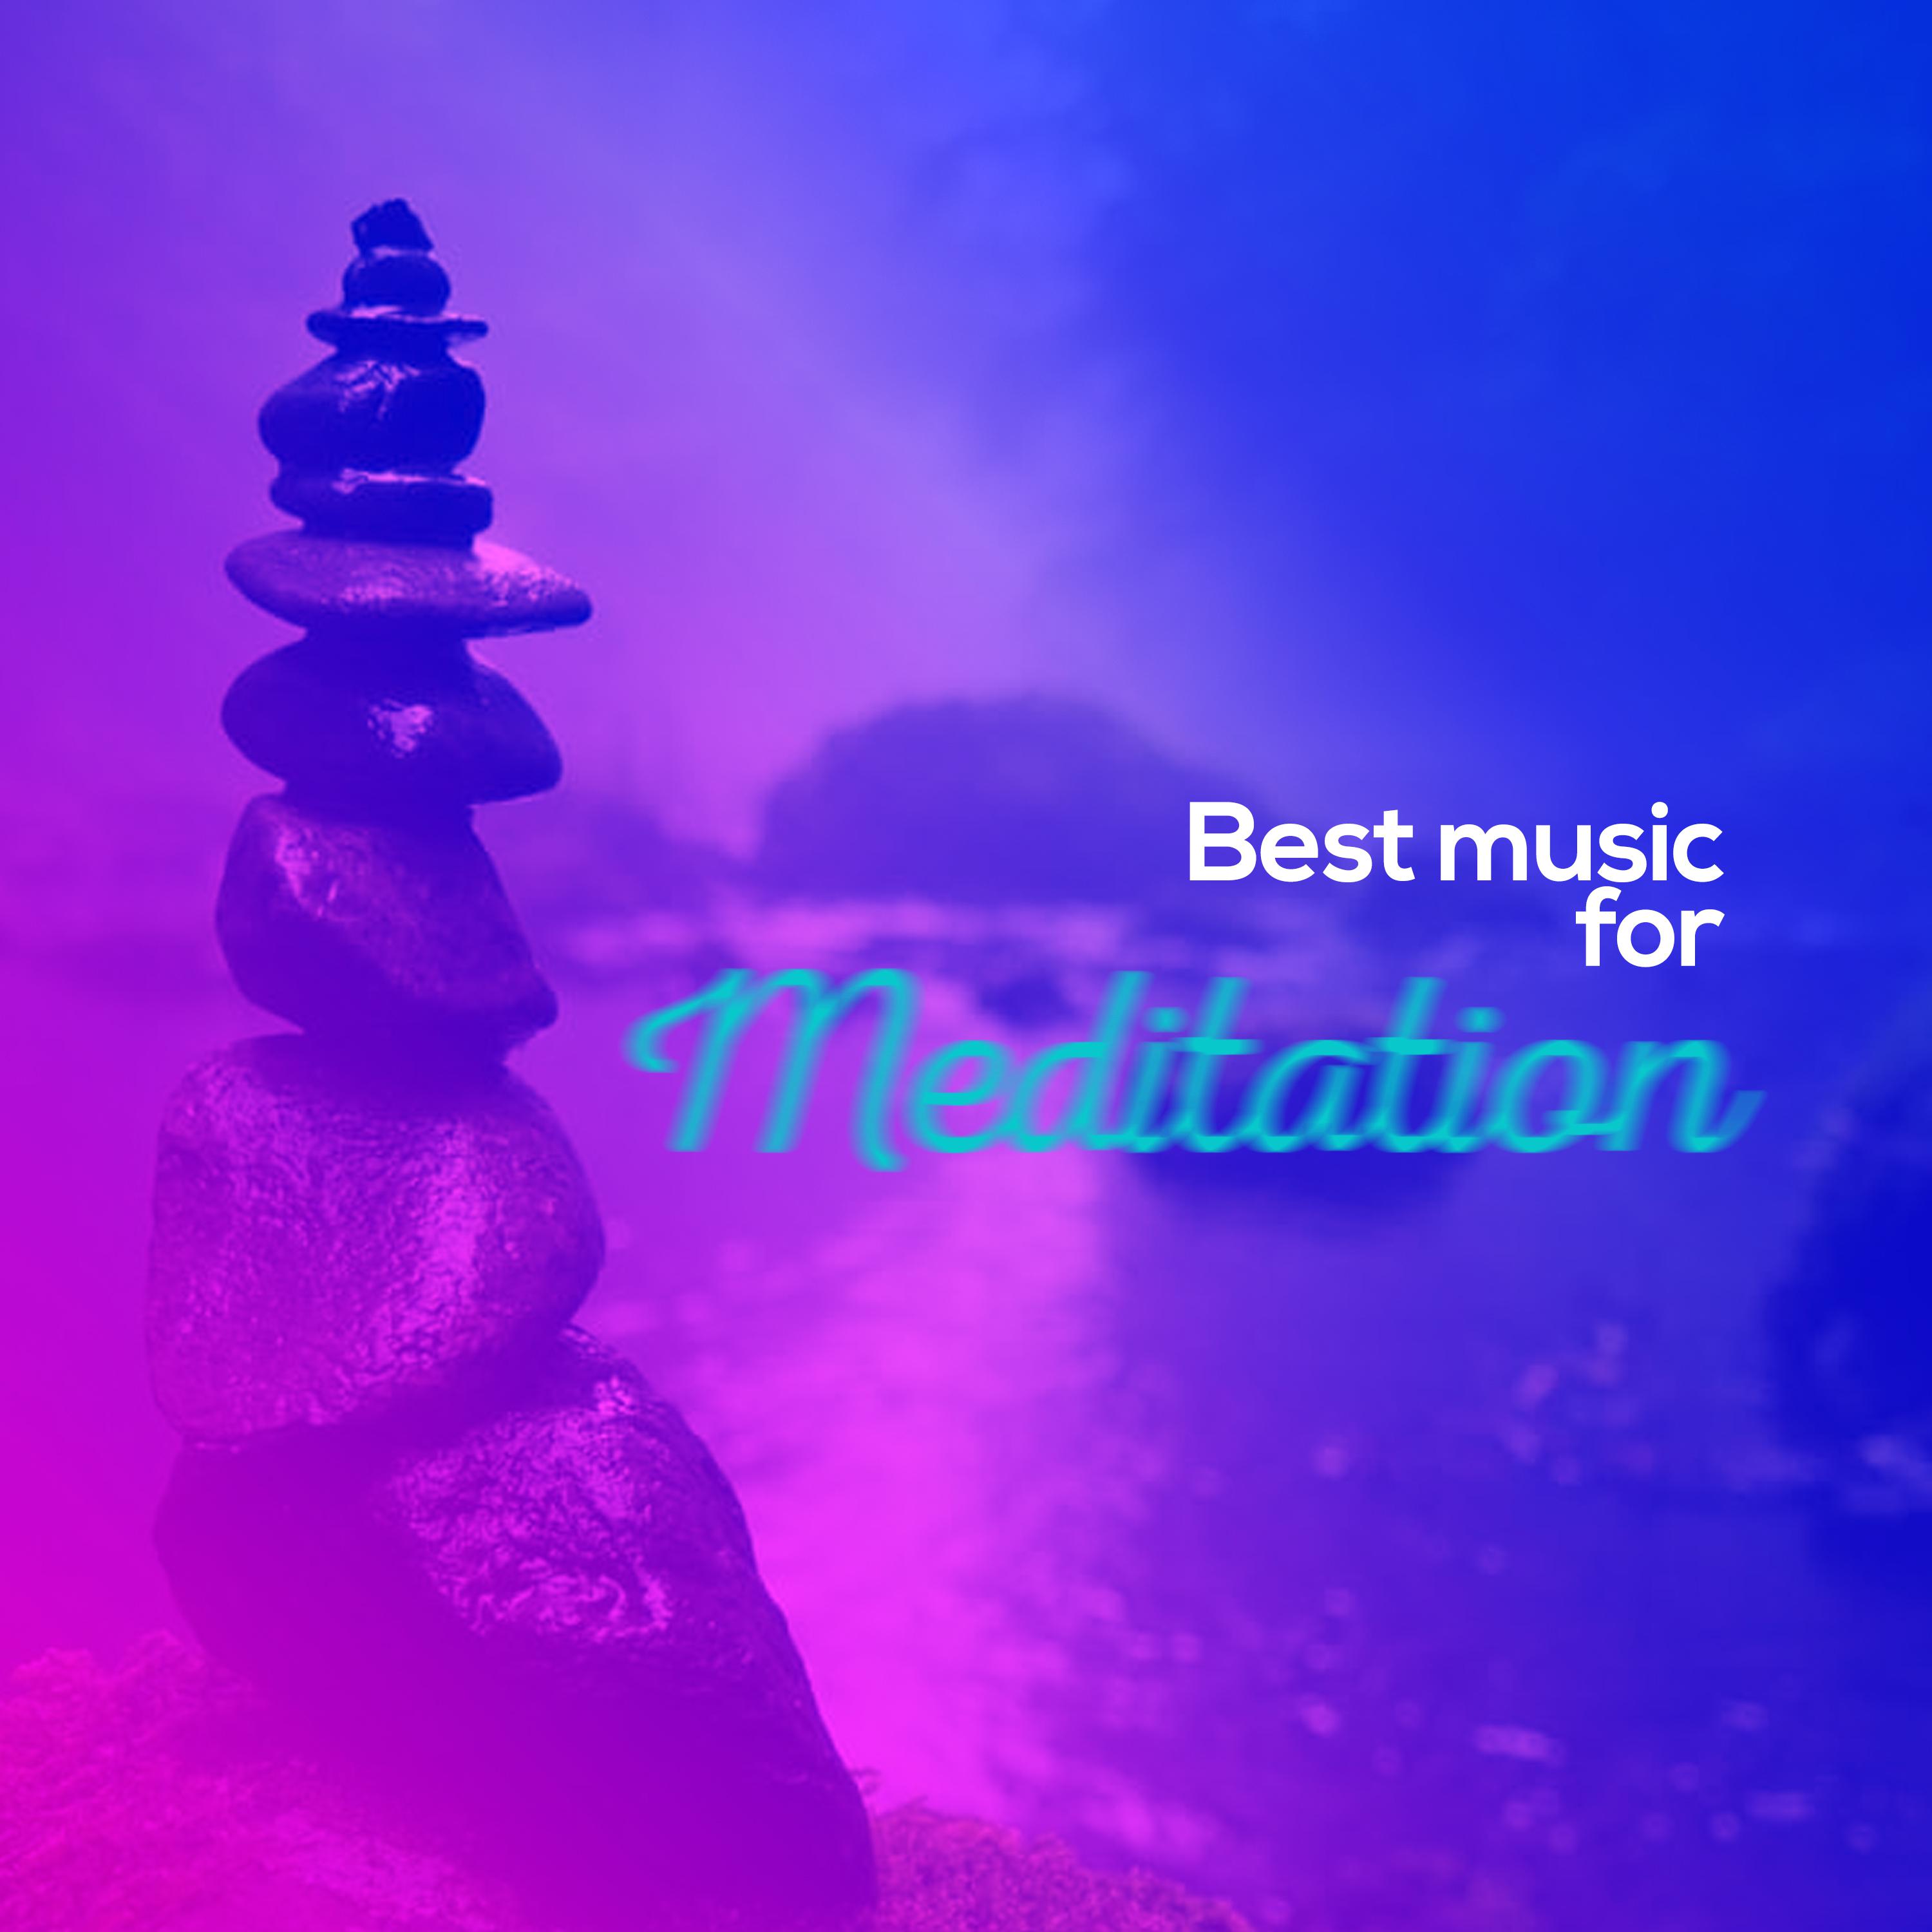 Best Music for Meditation